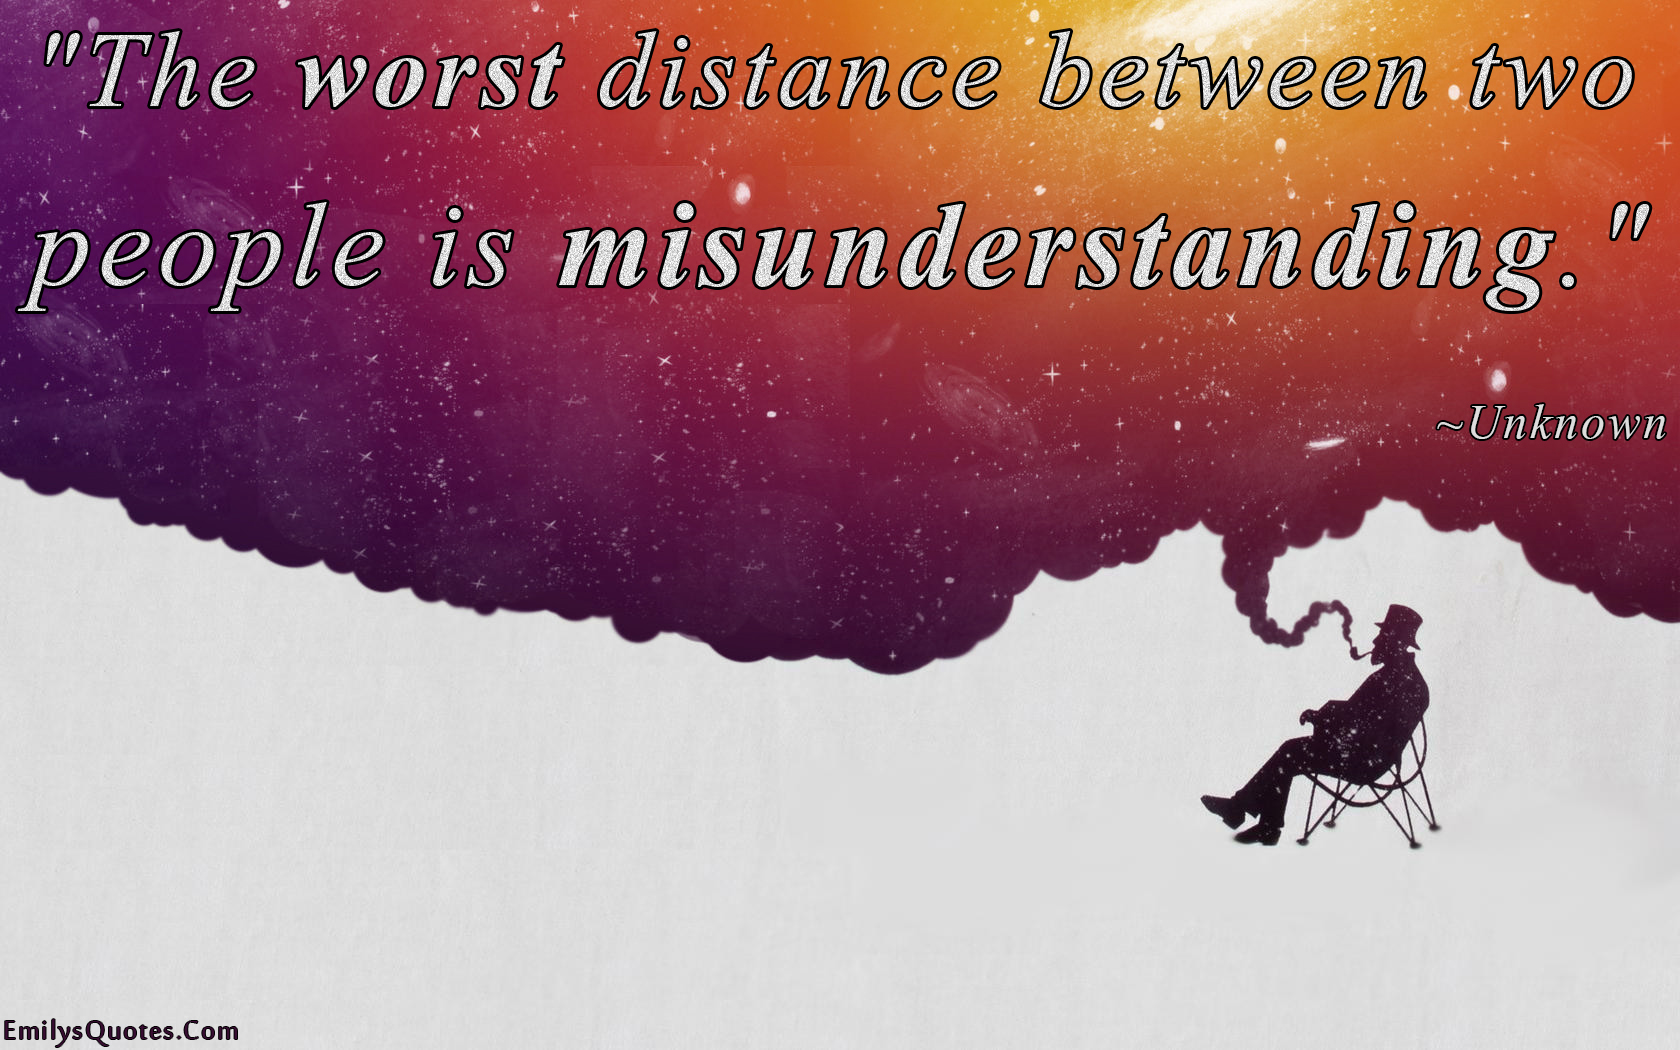 The worst distance between two people is misunderstanding